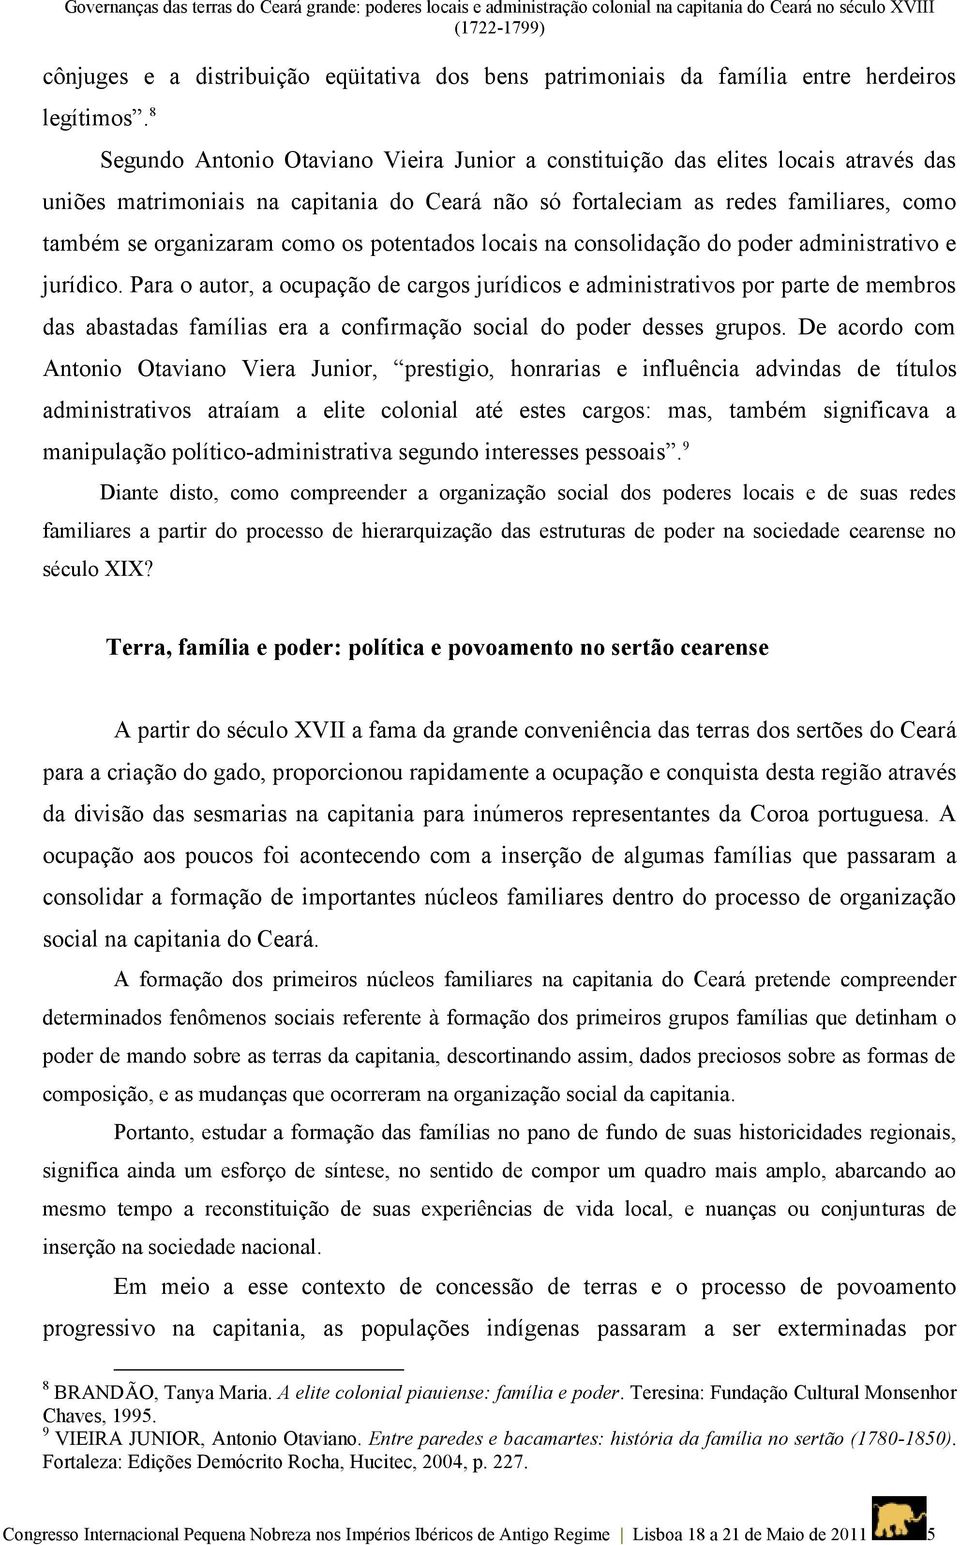 8 Segundo Antonio Otaviano Vieira Junior a constituição das elites locais através das uniões matrimoniais na capitania do Ceará não só fortaleciam as redes familiares, como também se organizaram como